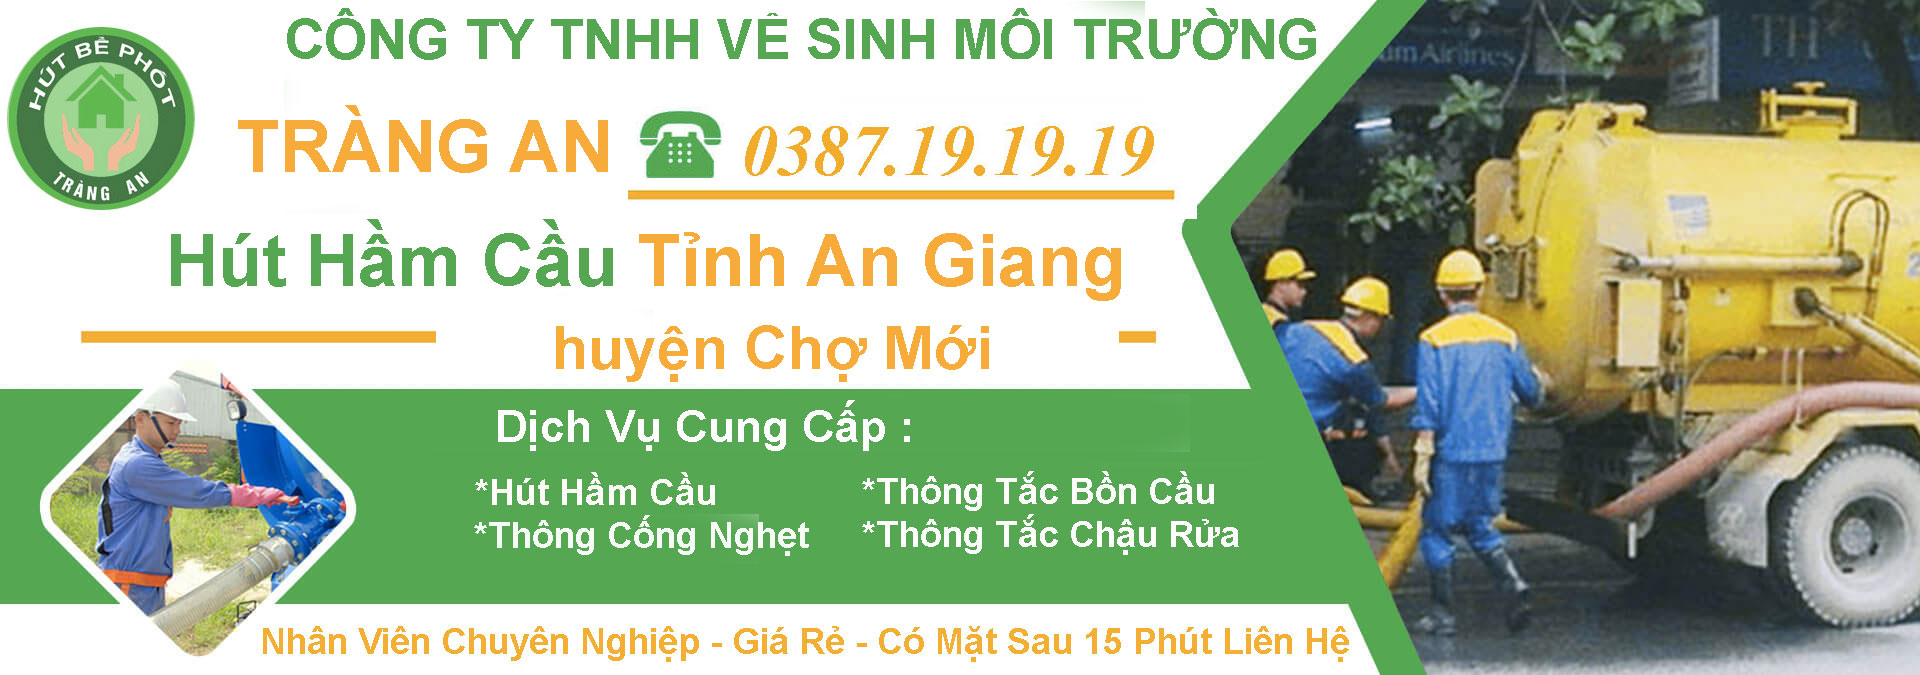 Hut Ham Cau An Giang Huyen Cho Moi